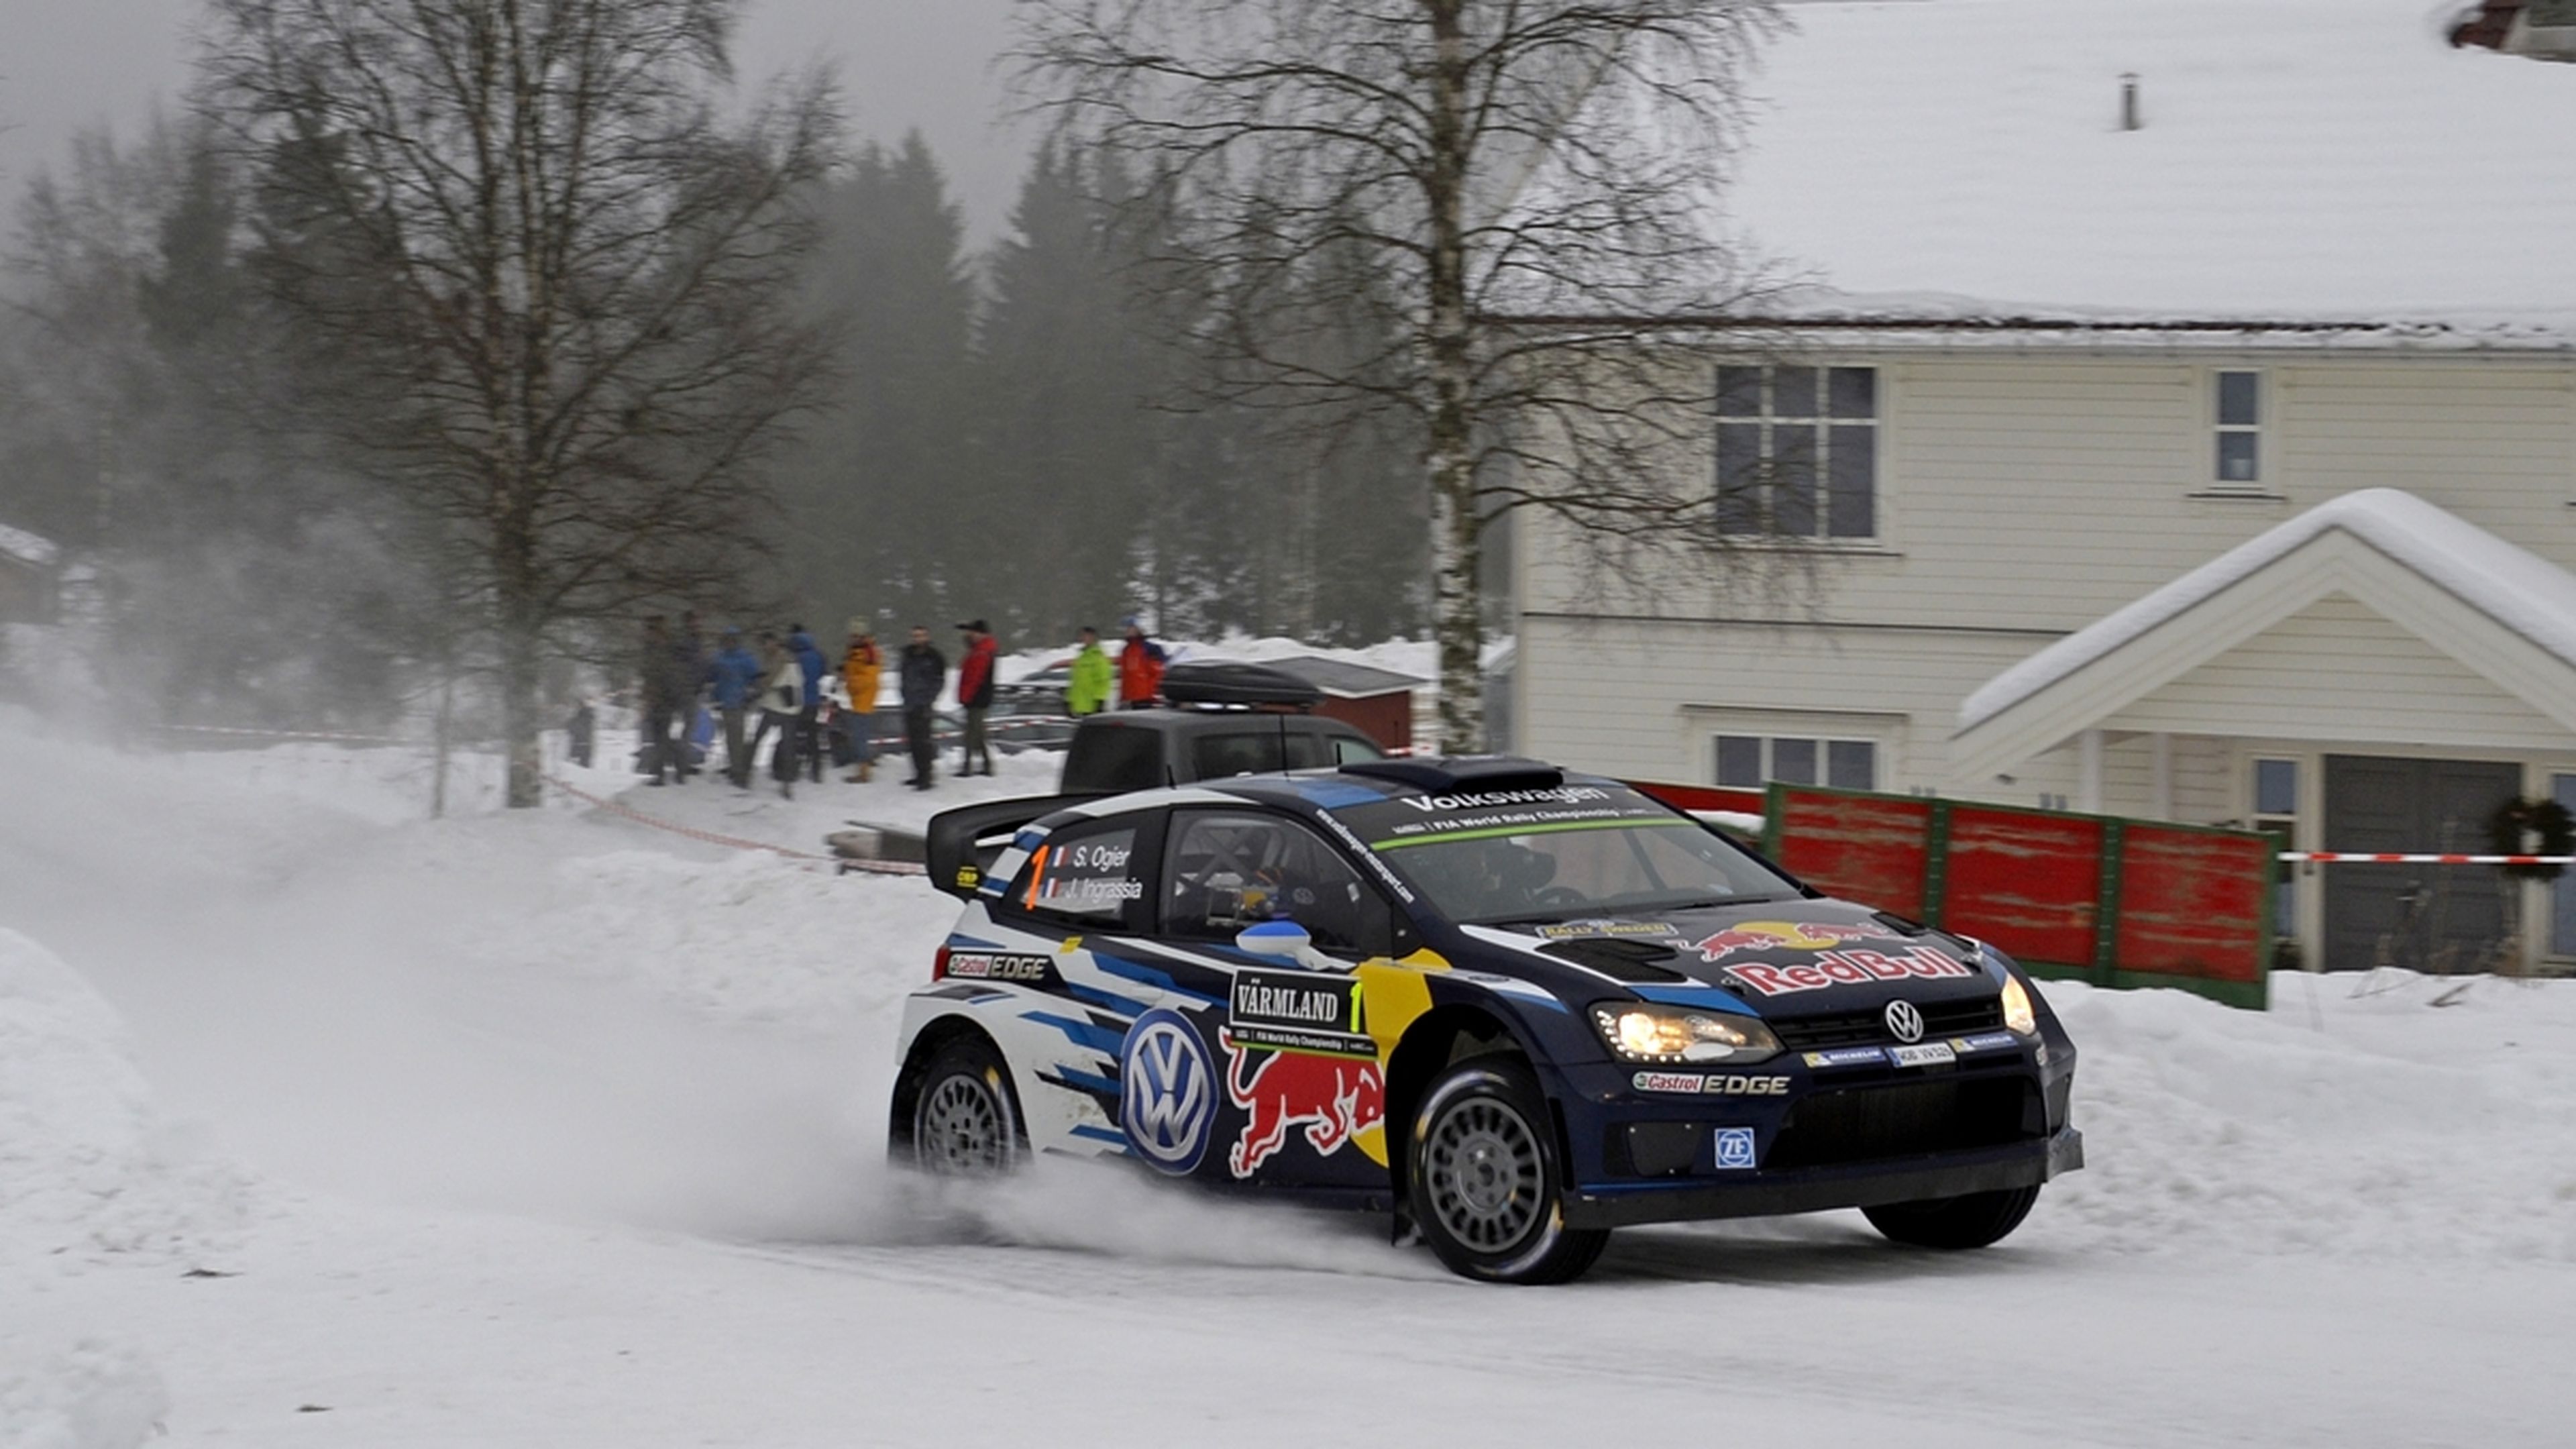 Rally Suecia 2015: Ogier vence en un emocionante final